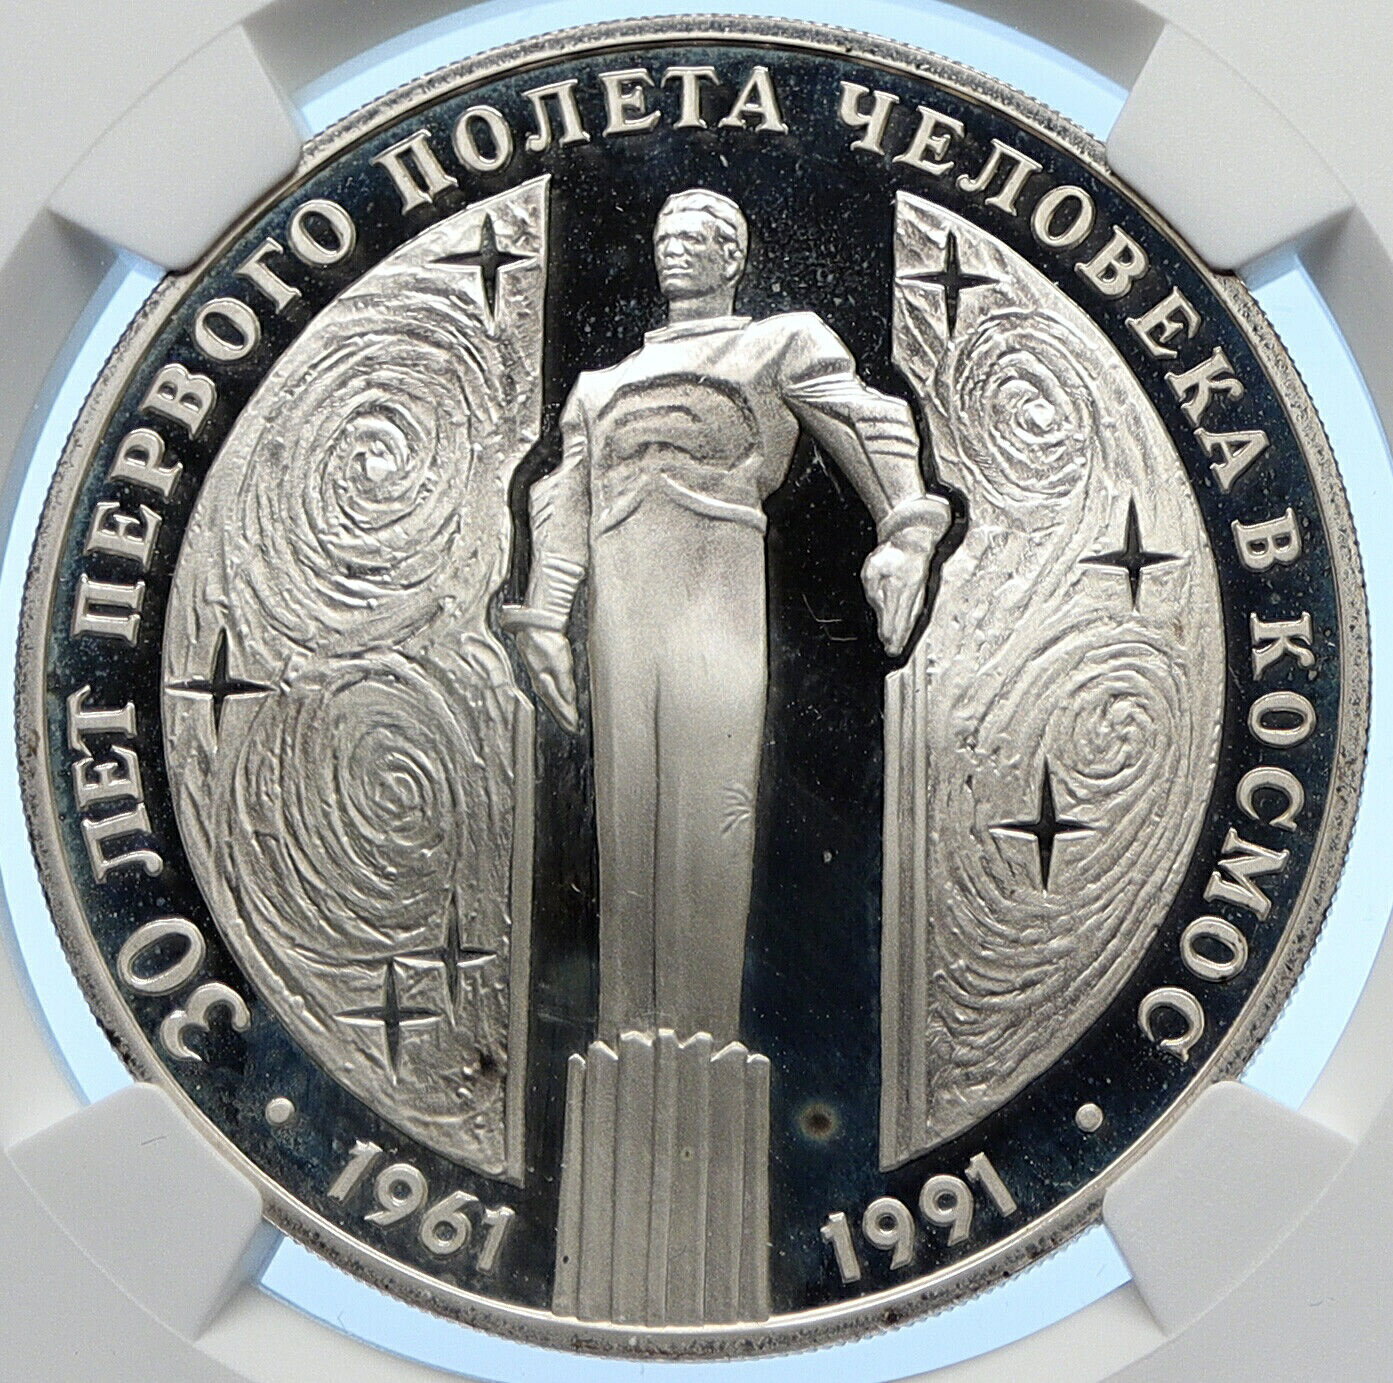  アンティークコイン コイン 金貨 銀貨  1991 RUSSIA 30Y YURI GAGARIN Monument Old Silver Proof 3 Rubles Coin NGC i106393